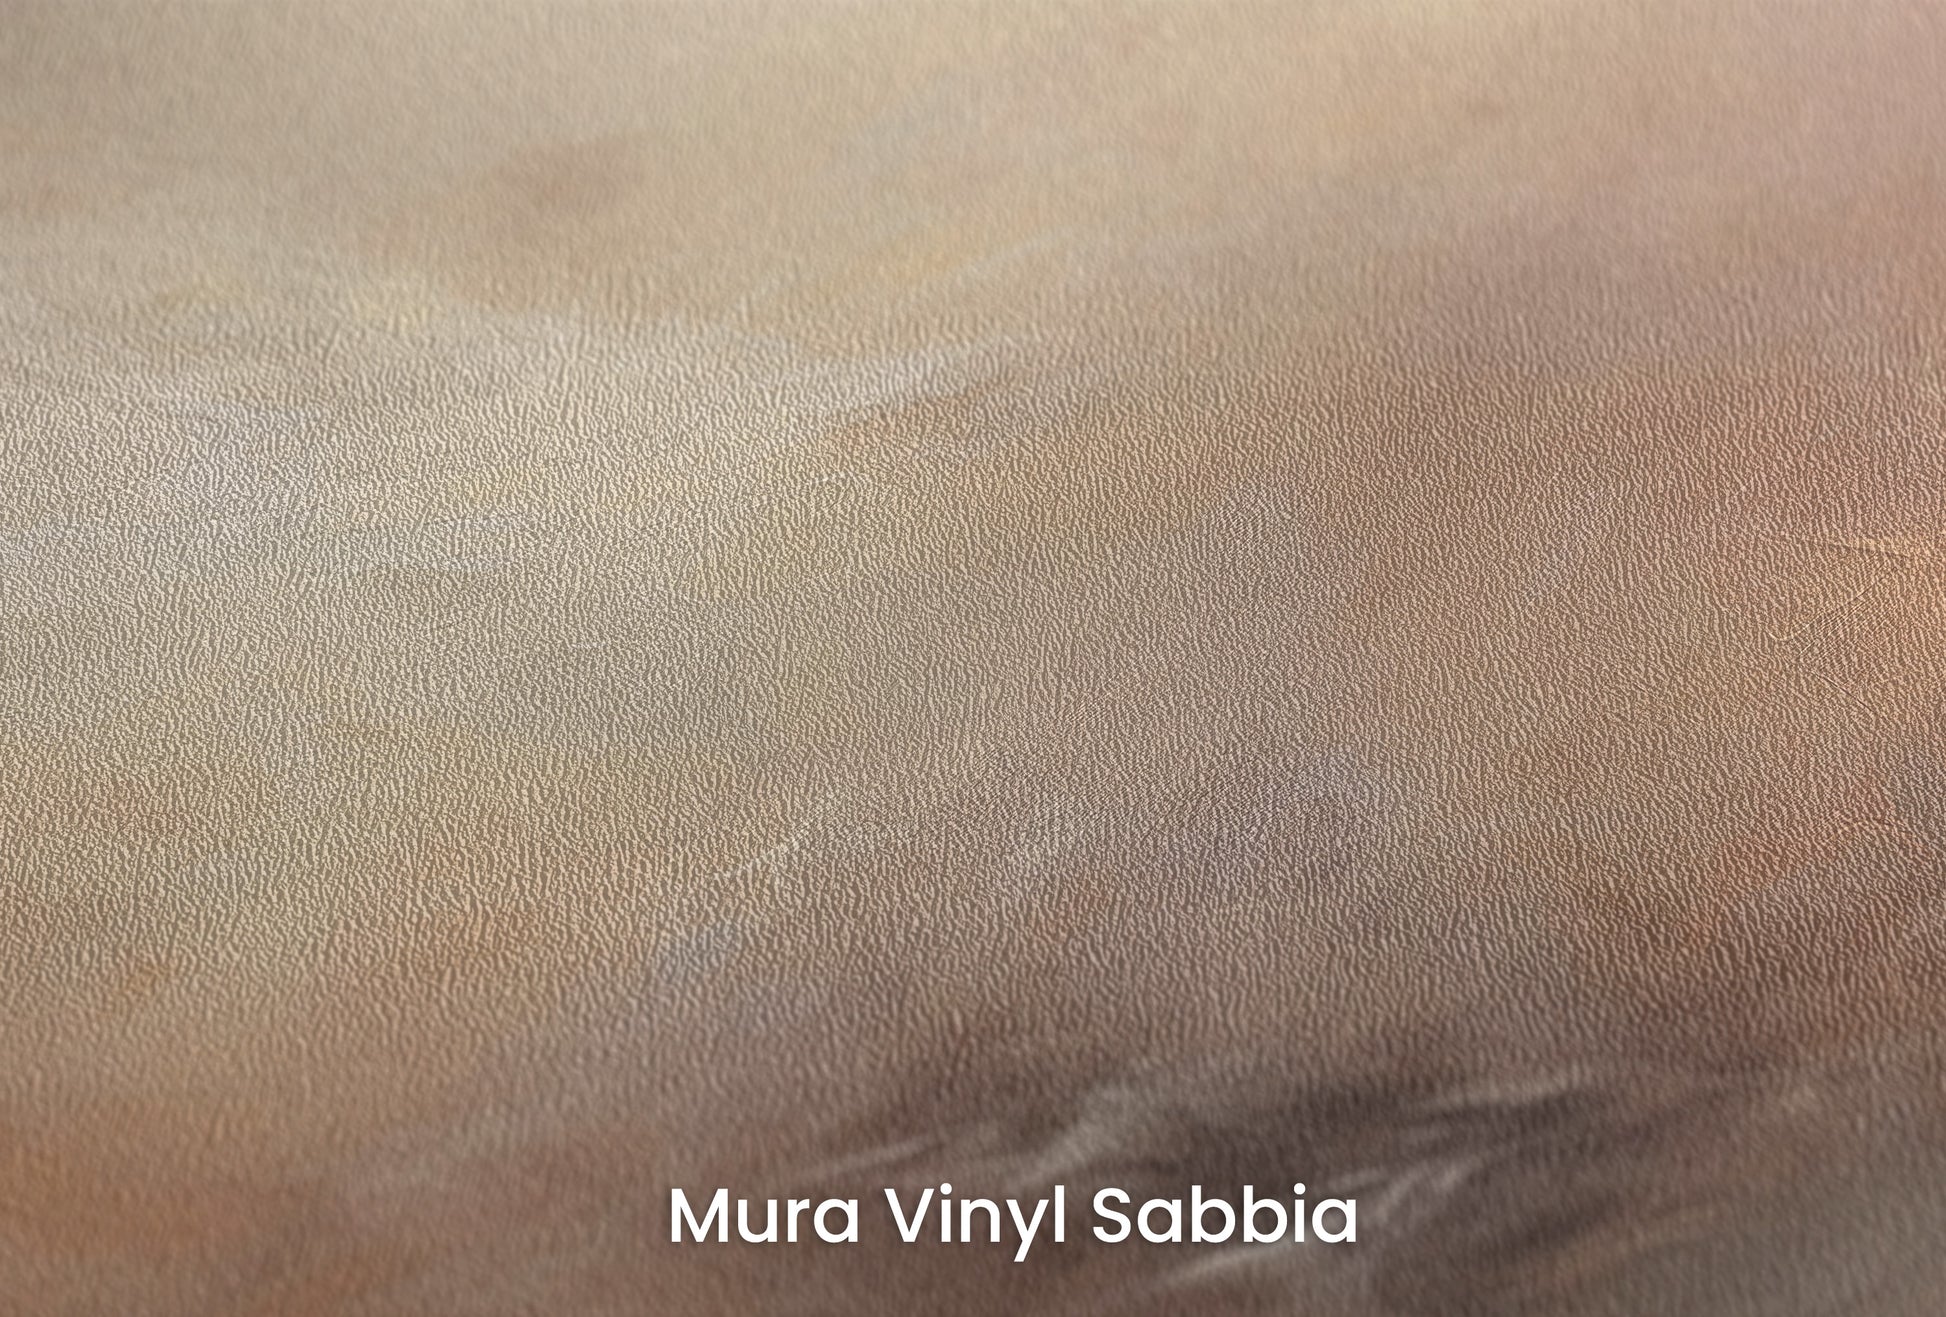 Zbliżenie na artystyczną fototapetę o nazwie WHISPERING DUSK na podłożu Mura Vinyl Sabbia struktura grubego ziarna piasku.